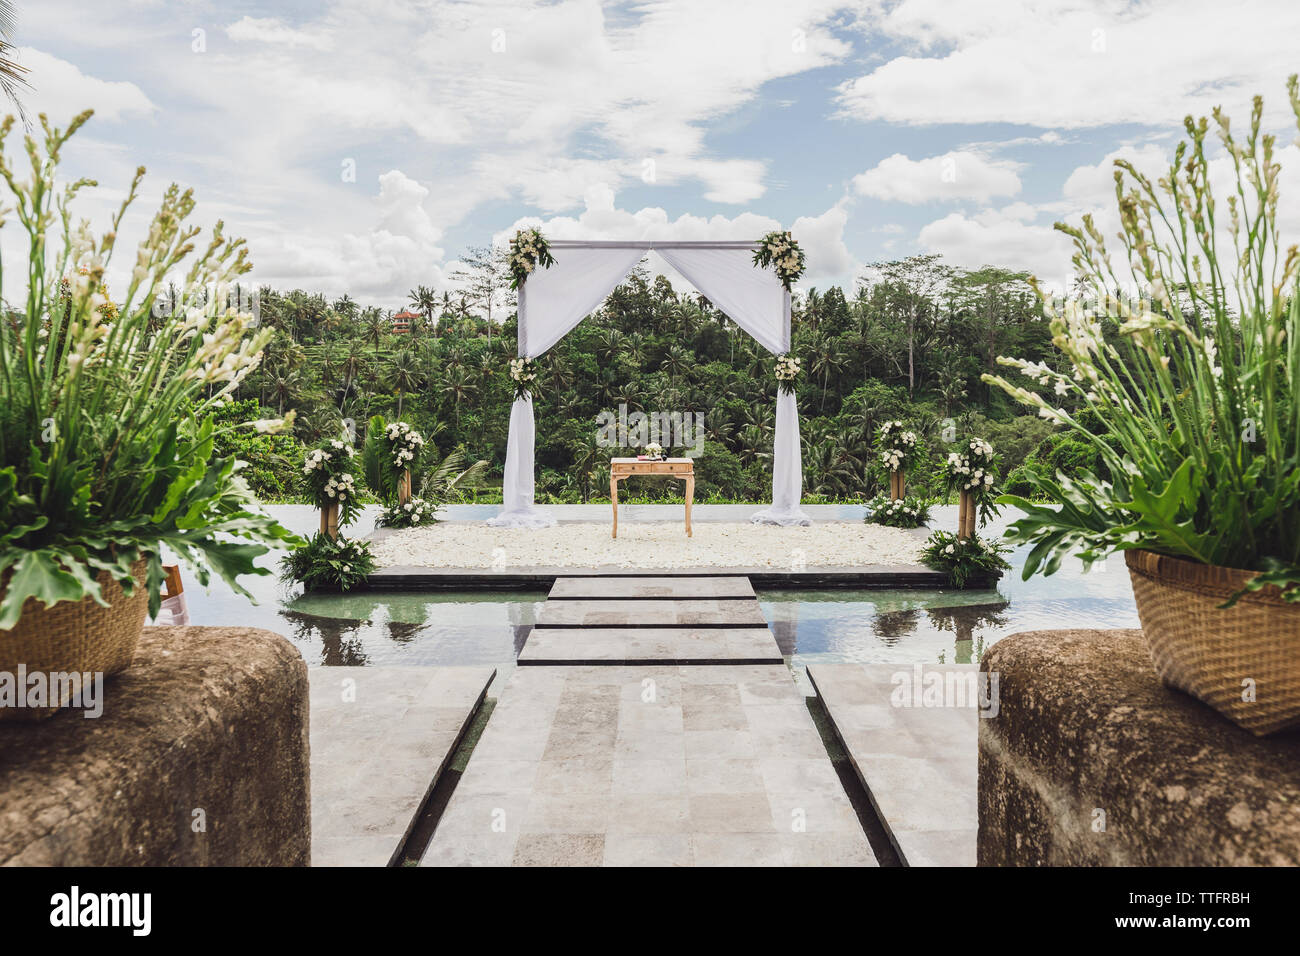 Bianco cerimonia di nozze arch nella giungla tropicale sul bordo del blu piscina infinity. Bellissimo arco e decori sulla scogliera. Foto Stock